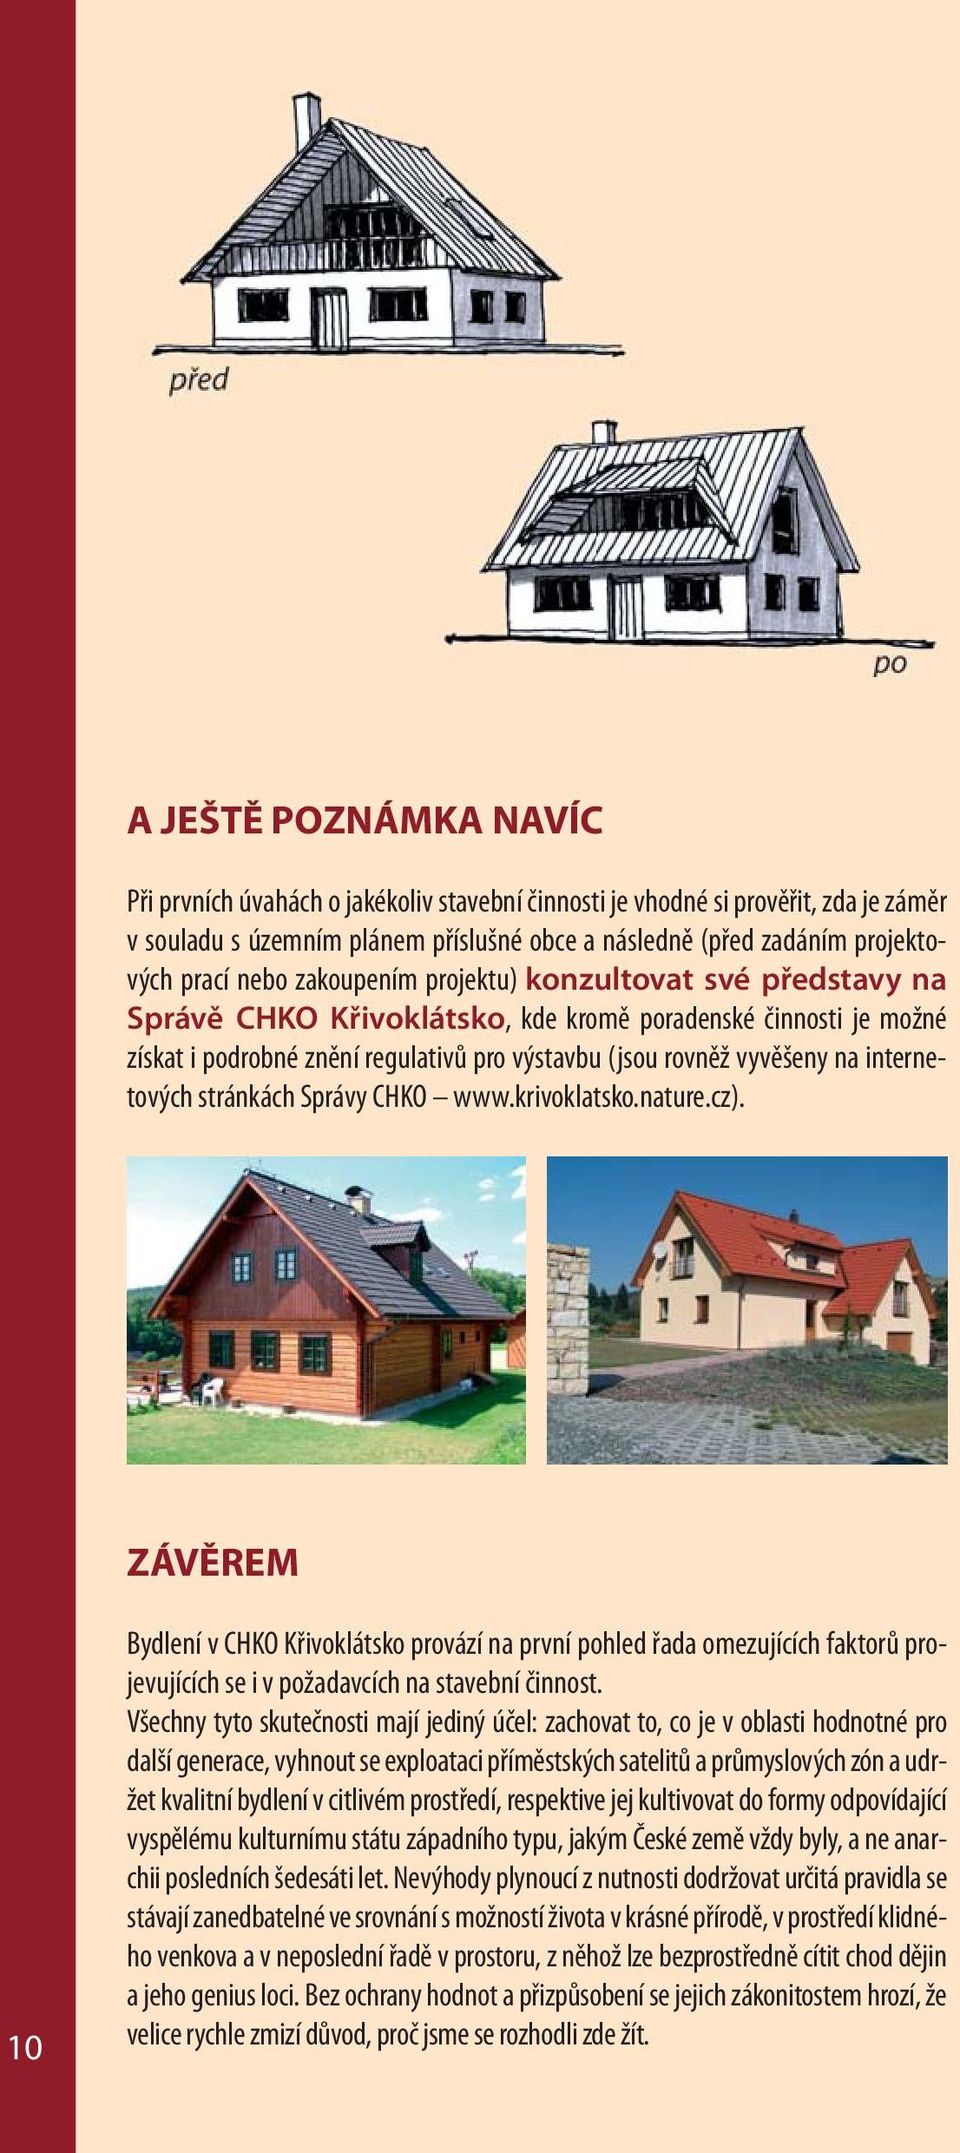 internetových stránkách Správy CHKO www.krivoklatsko.nature.cz).